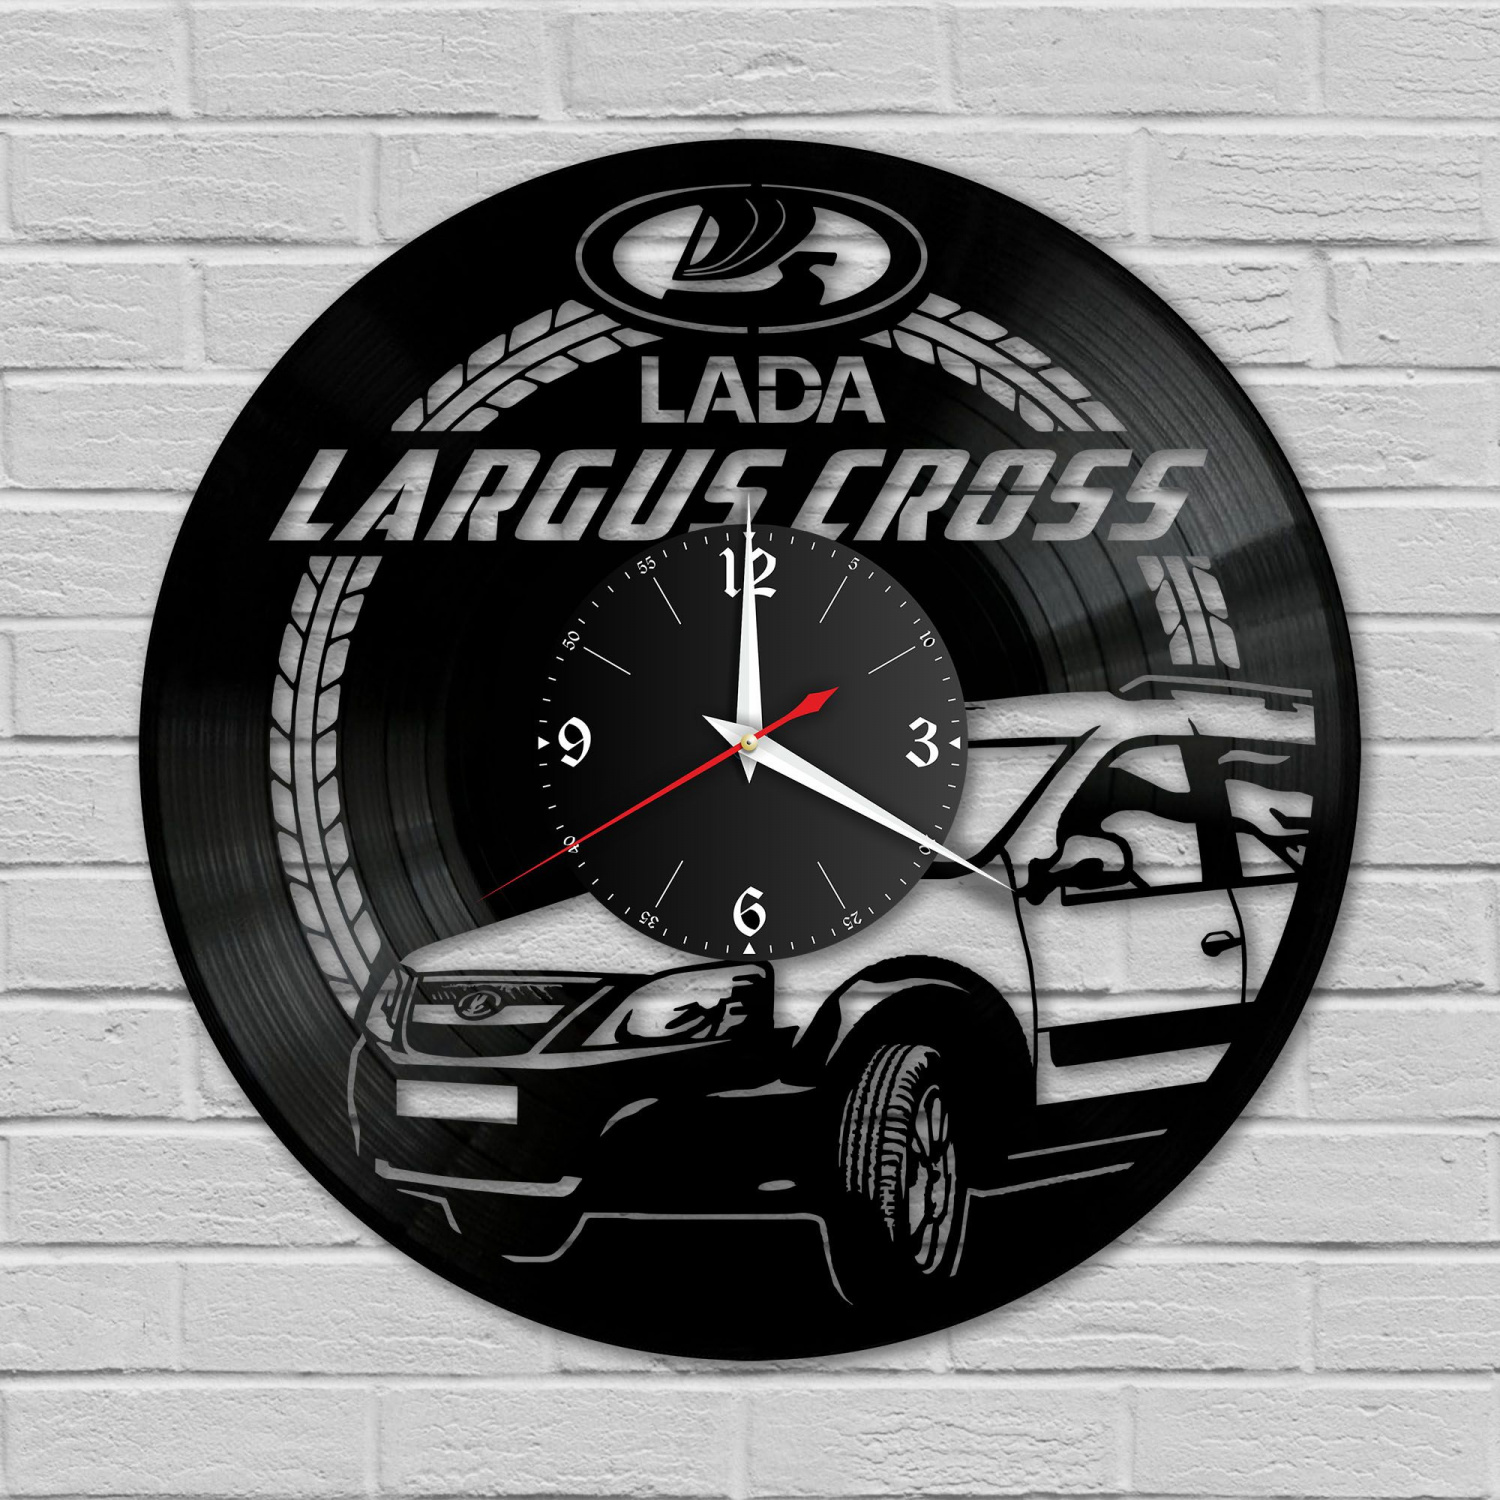 Часы настенные "Lada Largus Cross" из винила, №2 VC-10418